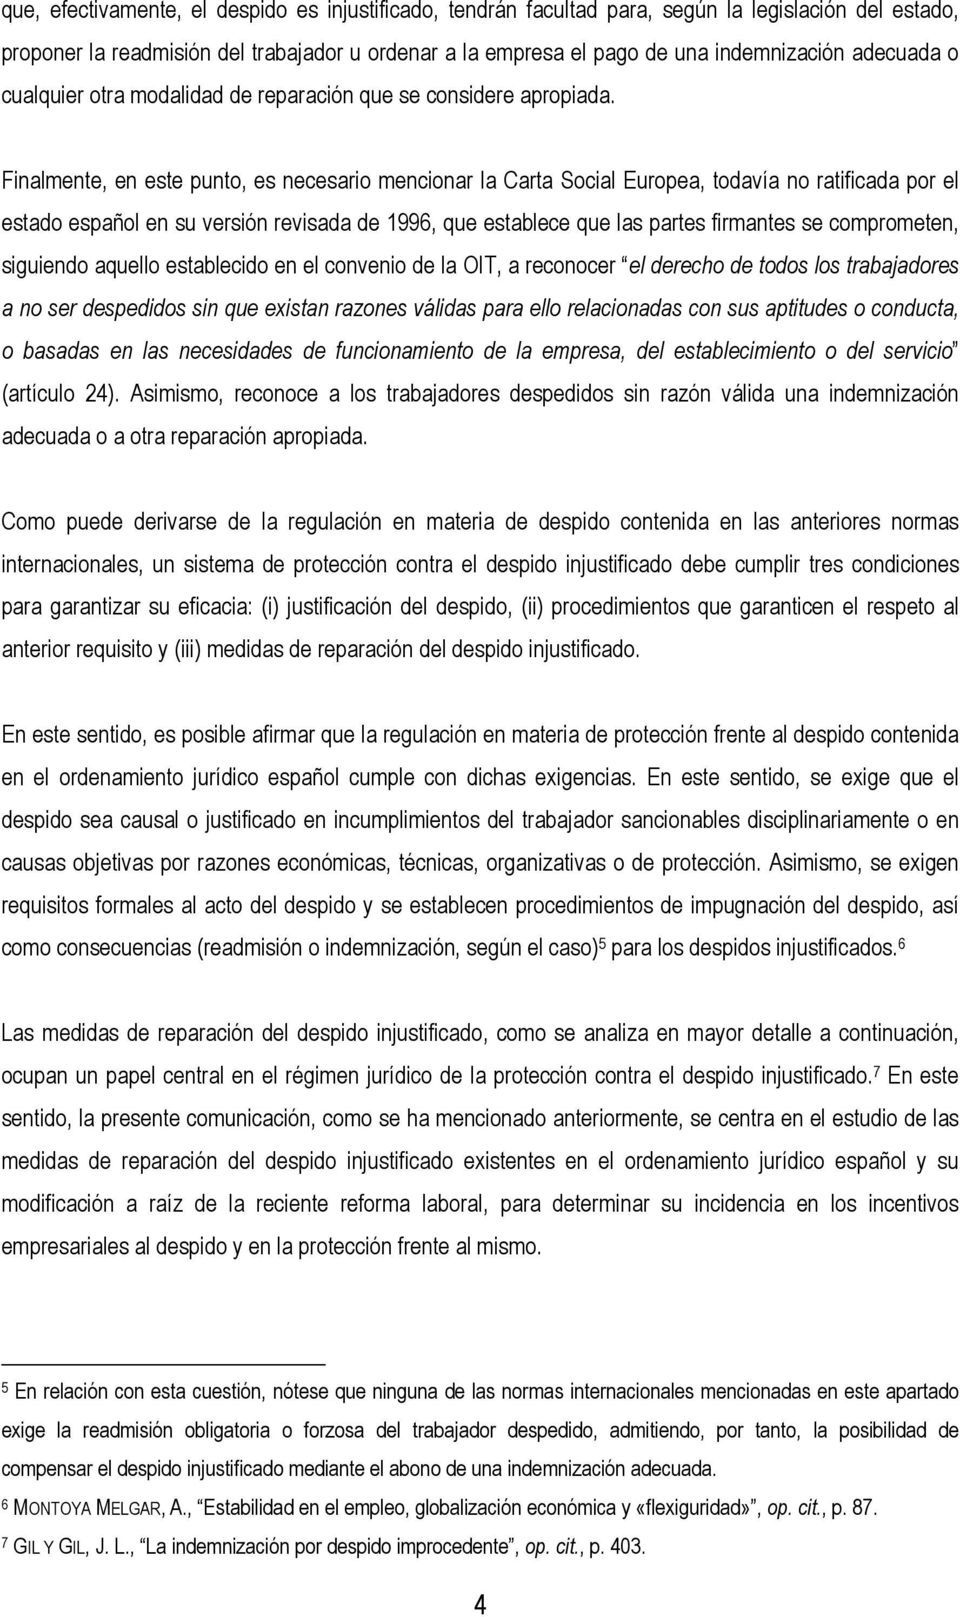 Finalmente, en este punto, es necesario mencionar la Carta Social Europea, todavía no ratificada por el estado español en su versión revisada de 1996, que establece que las partes firmantes se